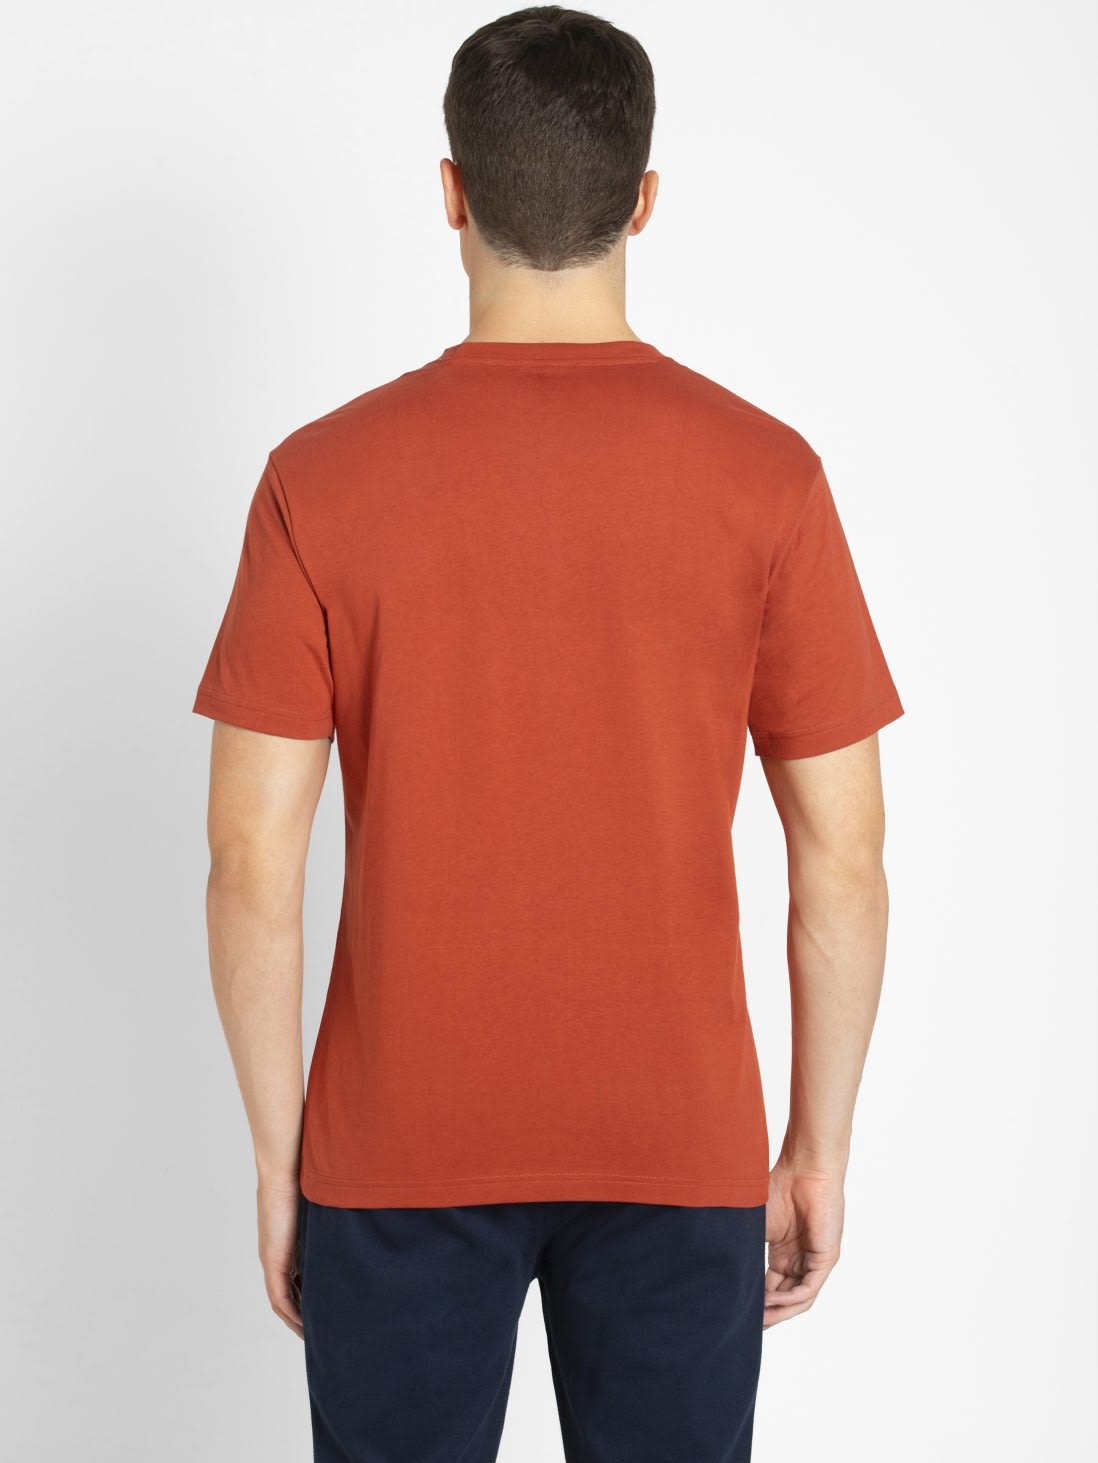 Buy Cinnabar Regular Fit Round Neck Half Sleeve T Shirt For Men 2714 Jockey India